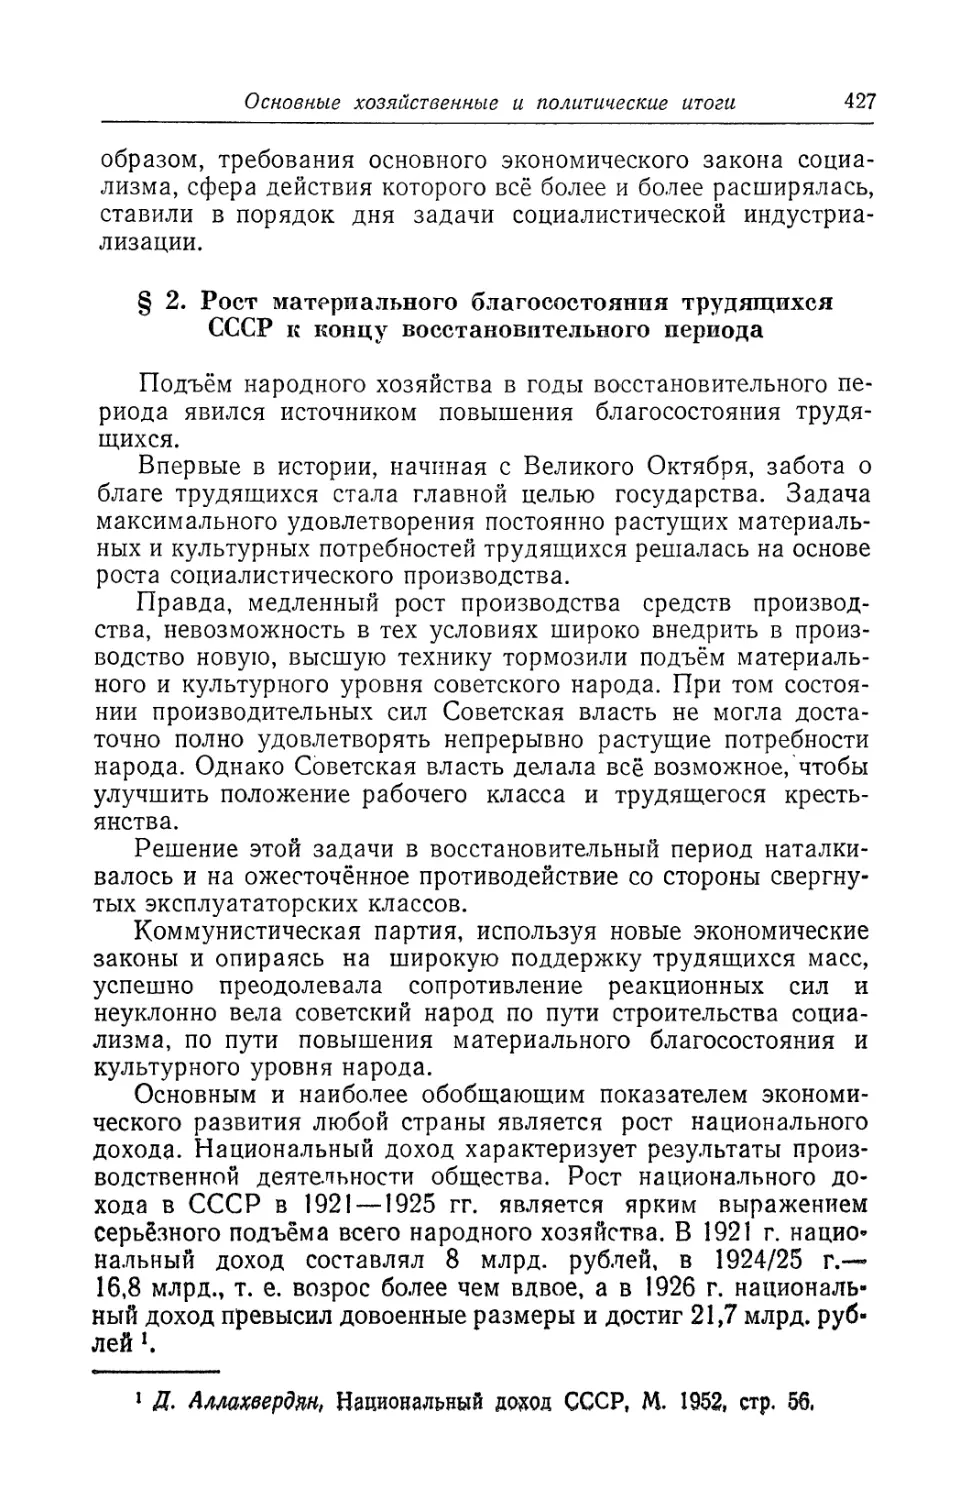 § 2. Рост материального благосостояния трудящихся СССР к концу восстановительного периода